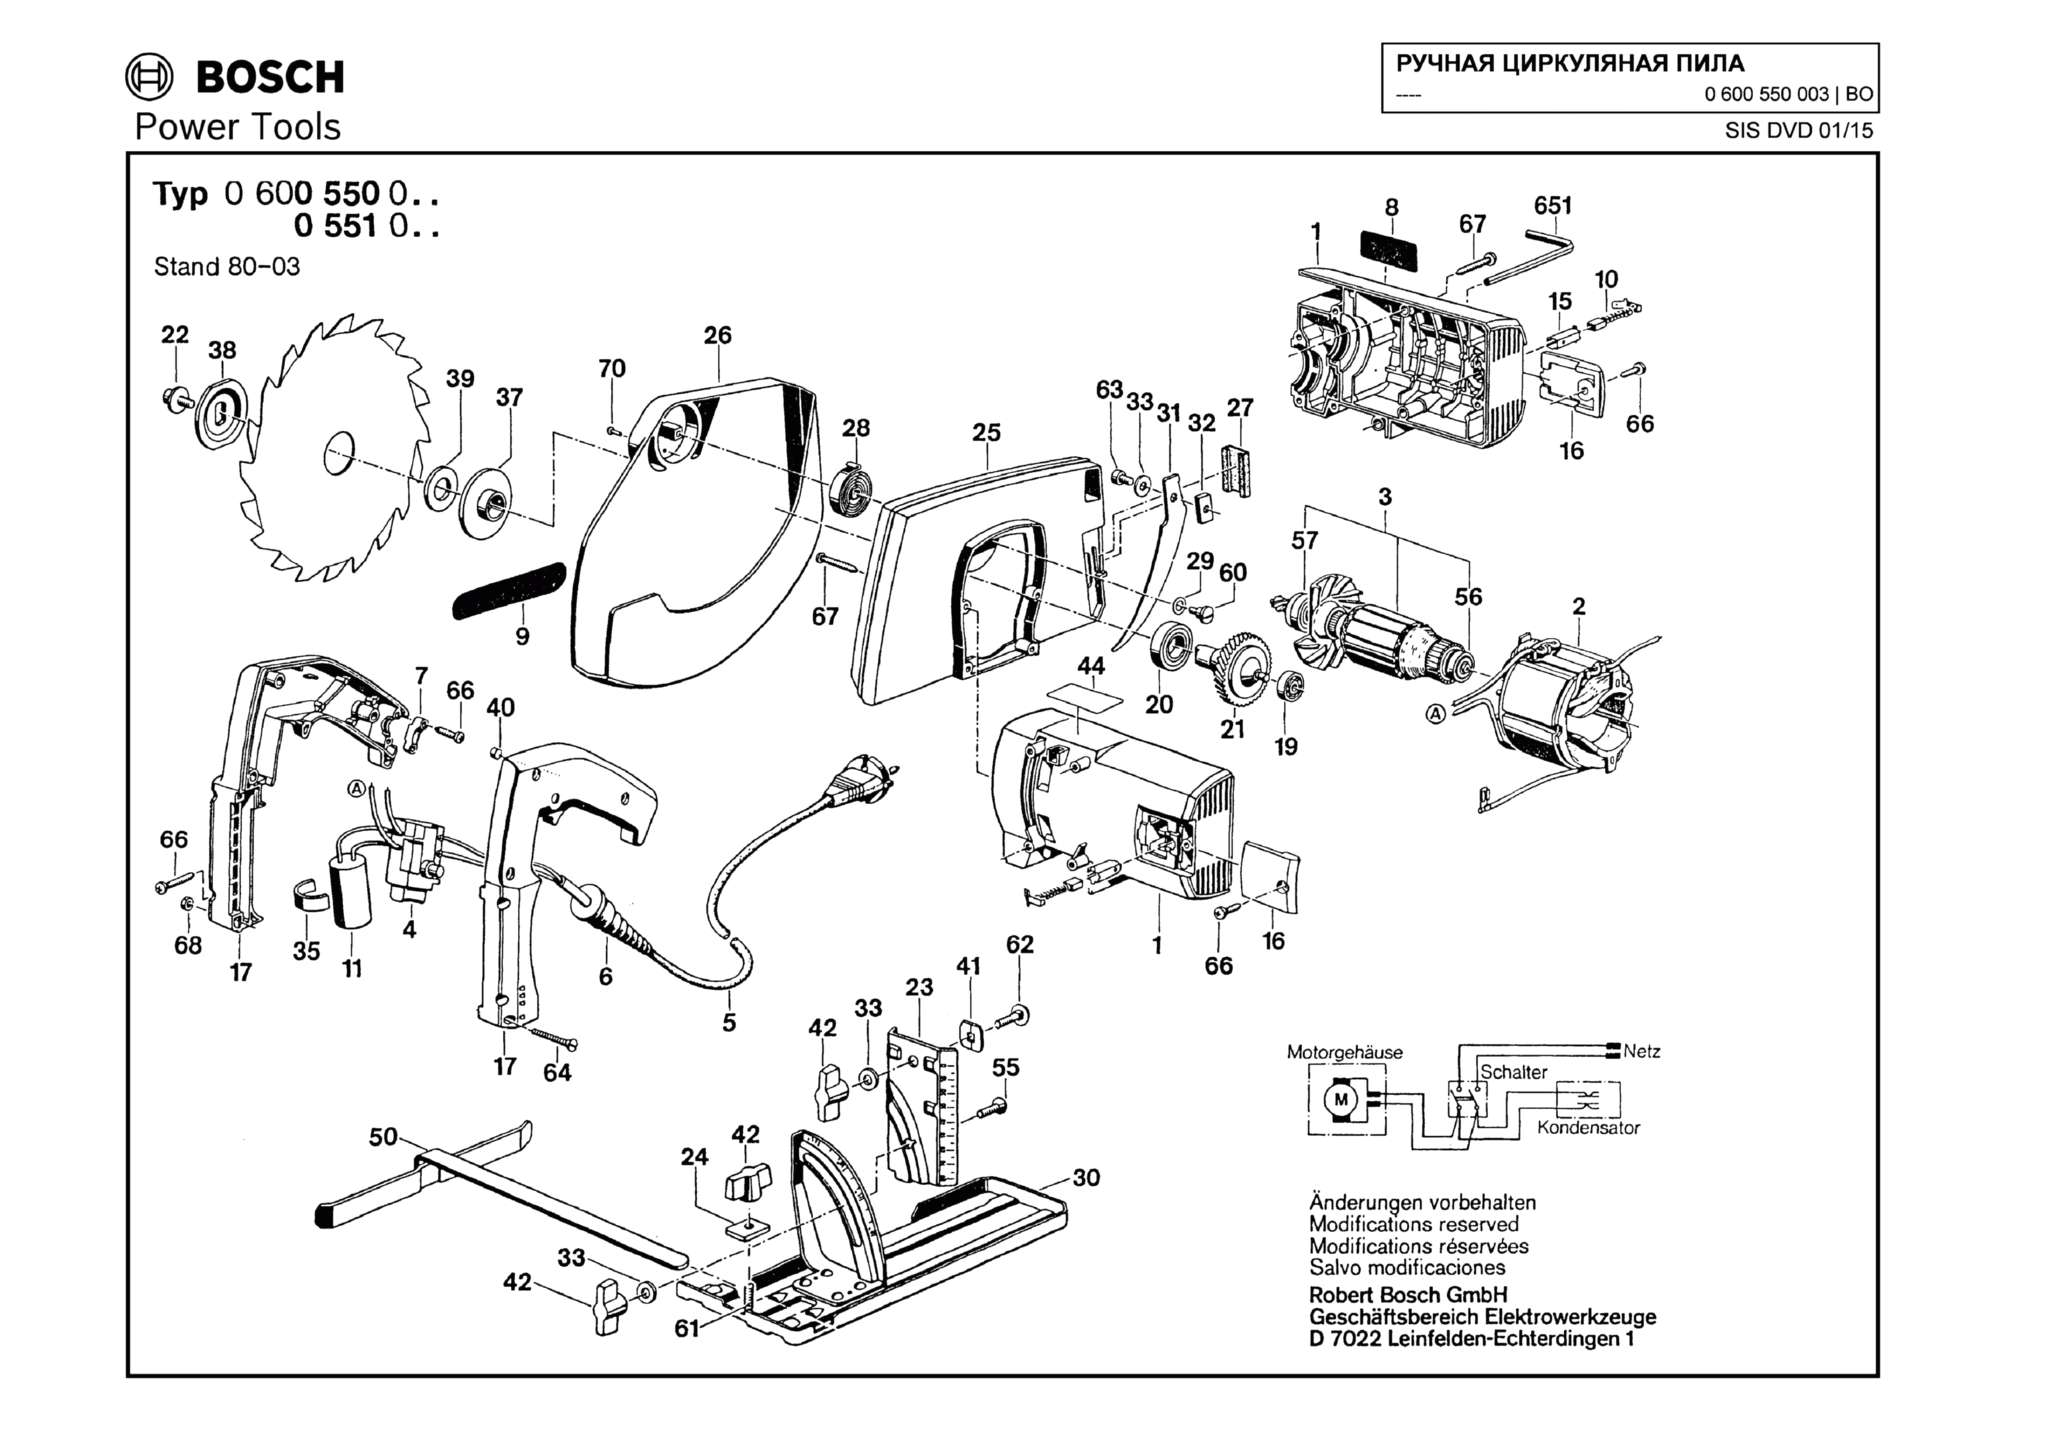 Запчасти, схема и деталировка Bosch (ТИП 0600550003)